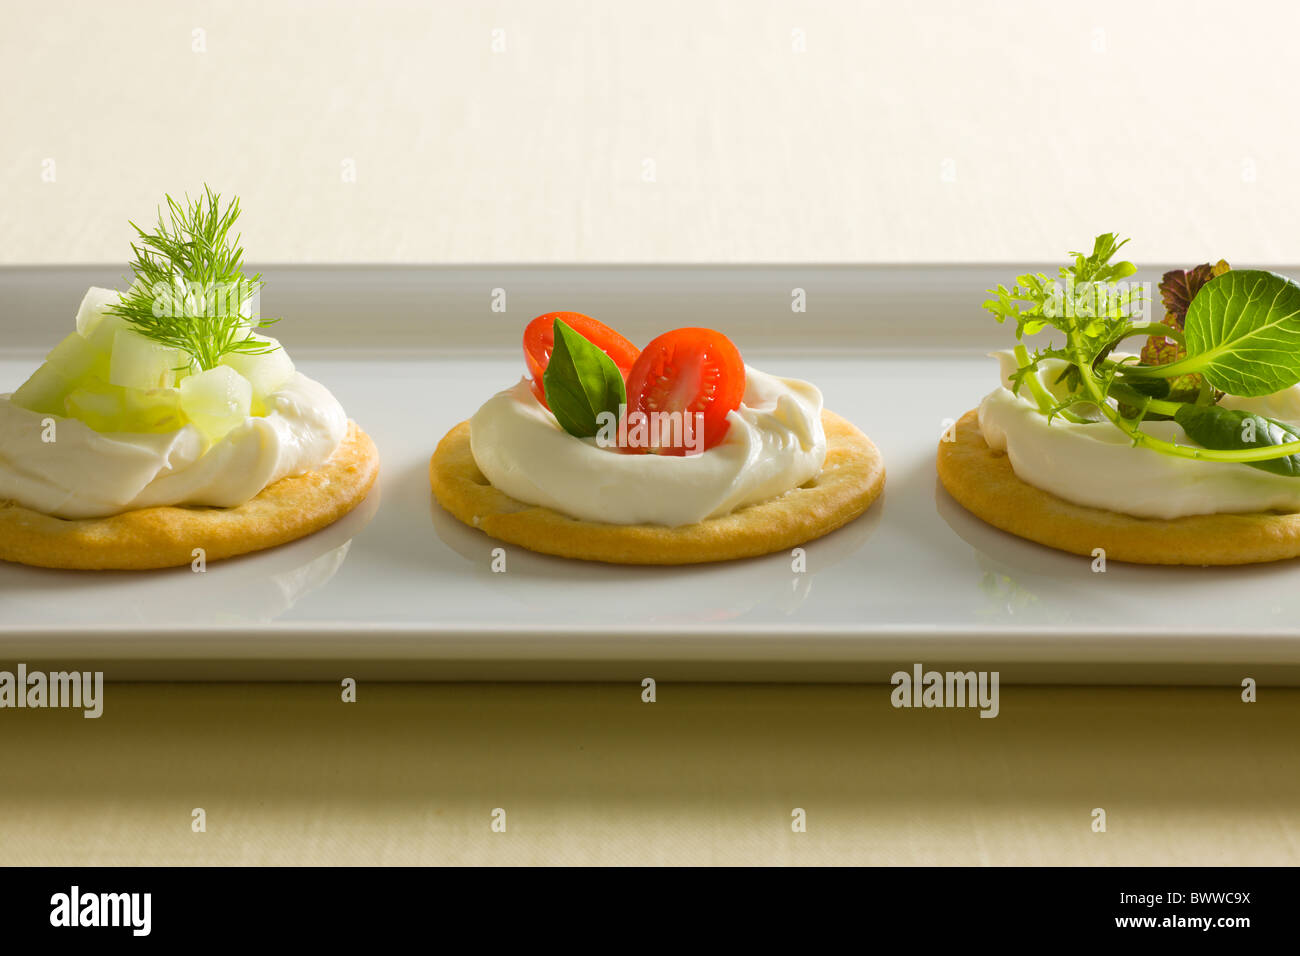 Kekse mit cremiger Käse verbreiten, garniert mit Tomaten, Basilikum, Gurken, Dill, gemischte grün und Radieschen oben auf einem weiß r Stockfoto